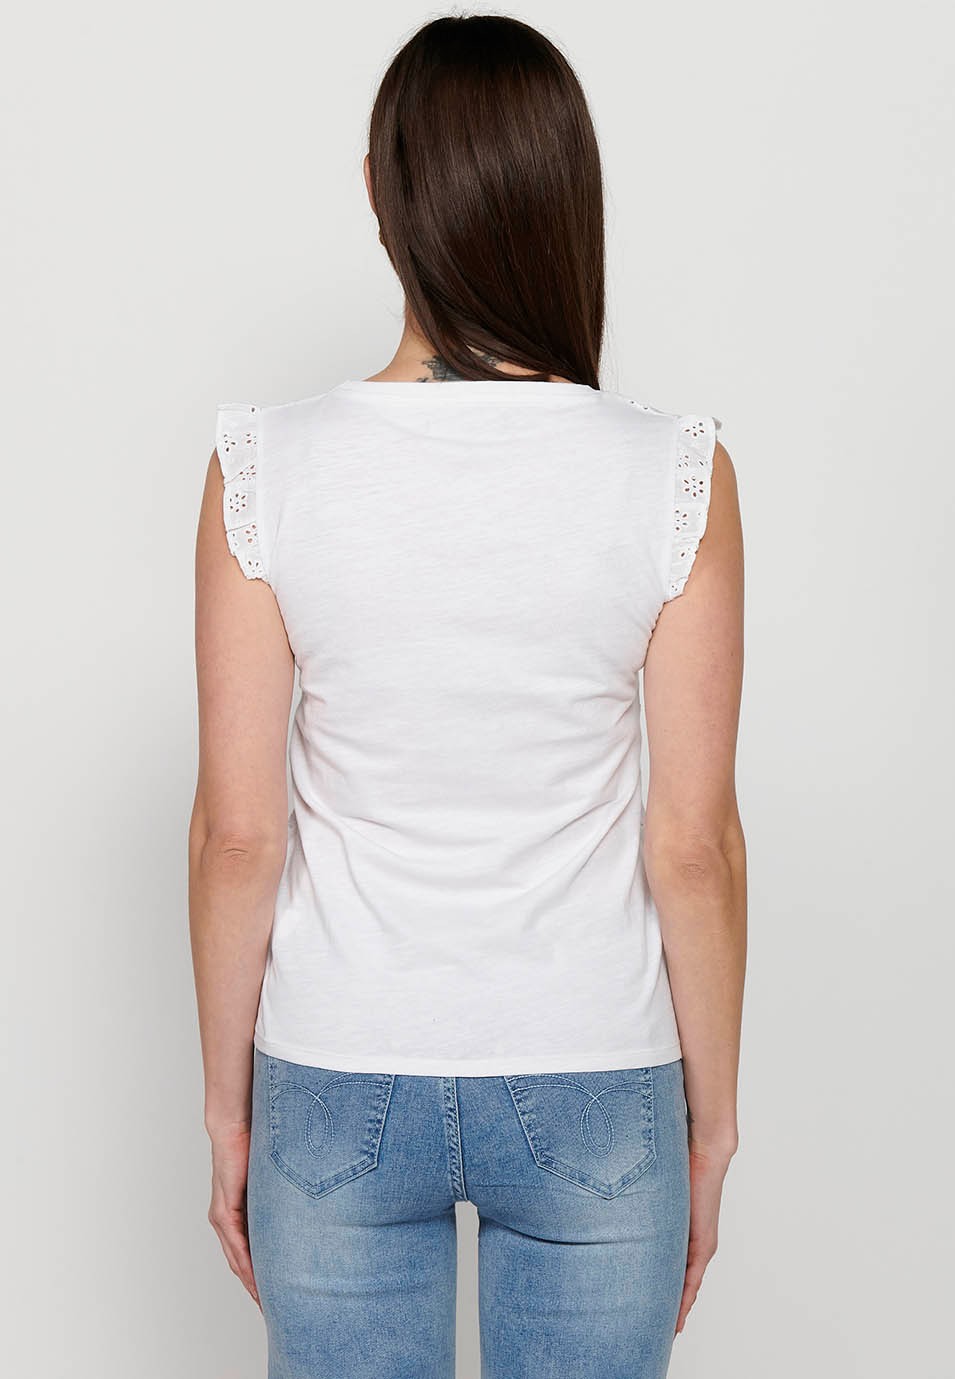 Camiseta de manga corta, volante en los hombros, color blanco para mujer